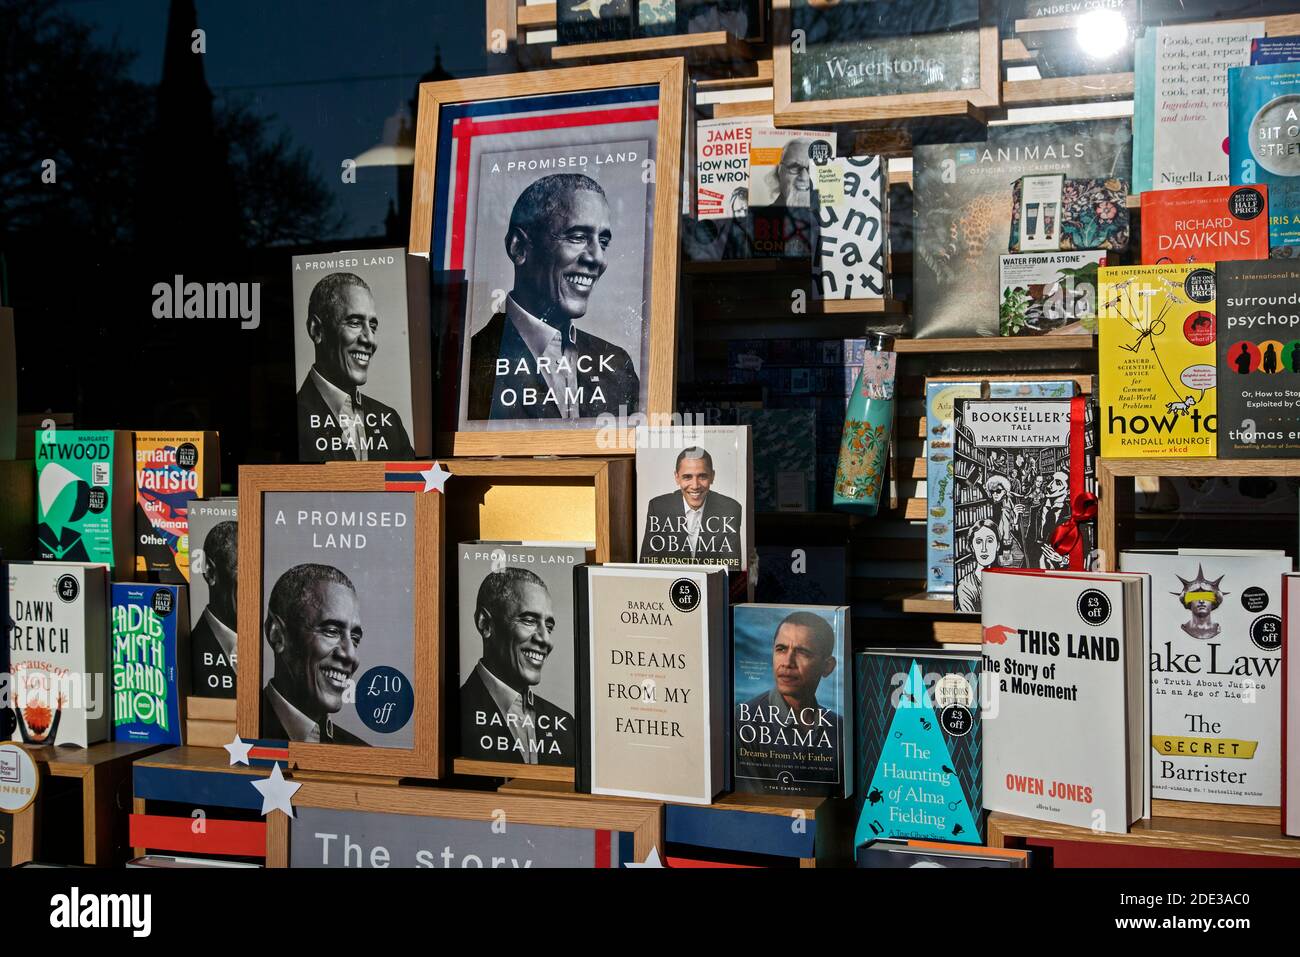 Kopien von Barack Obamas Memoiren "A Promised Land", die im Fenster der Waterstones Buchhandlung in Edinburgh, Schottland, Großbritannien, auffällig sind. Stockfoto